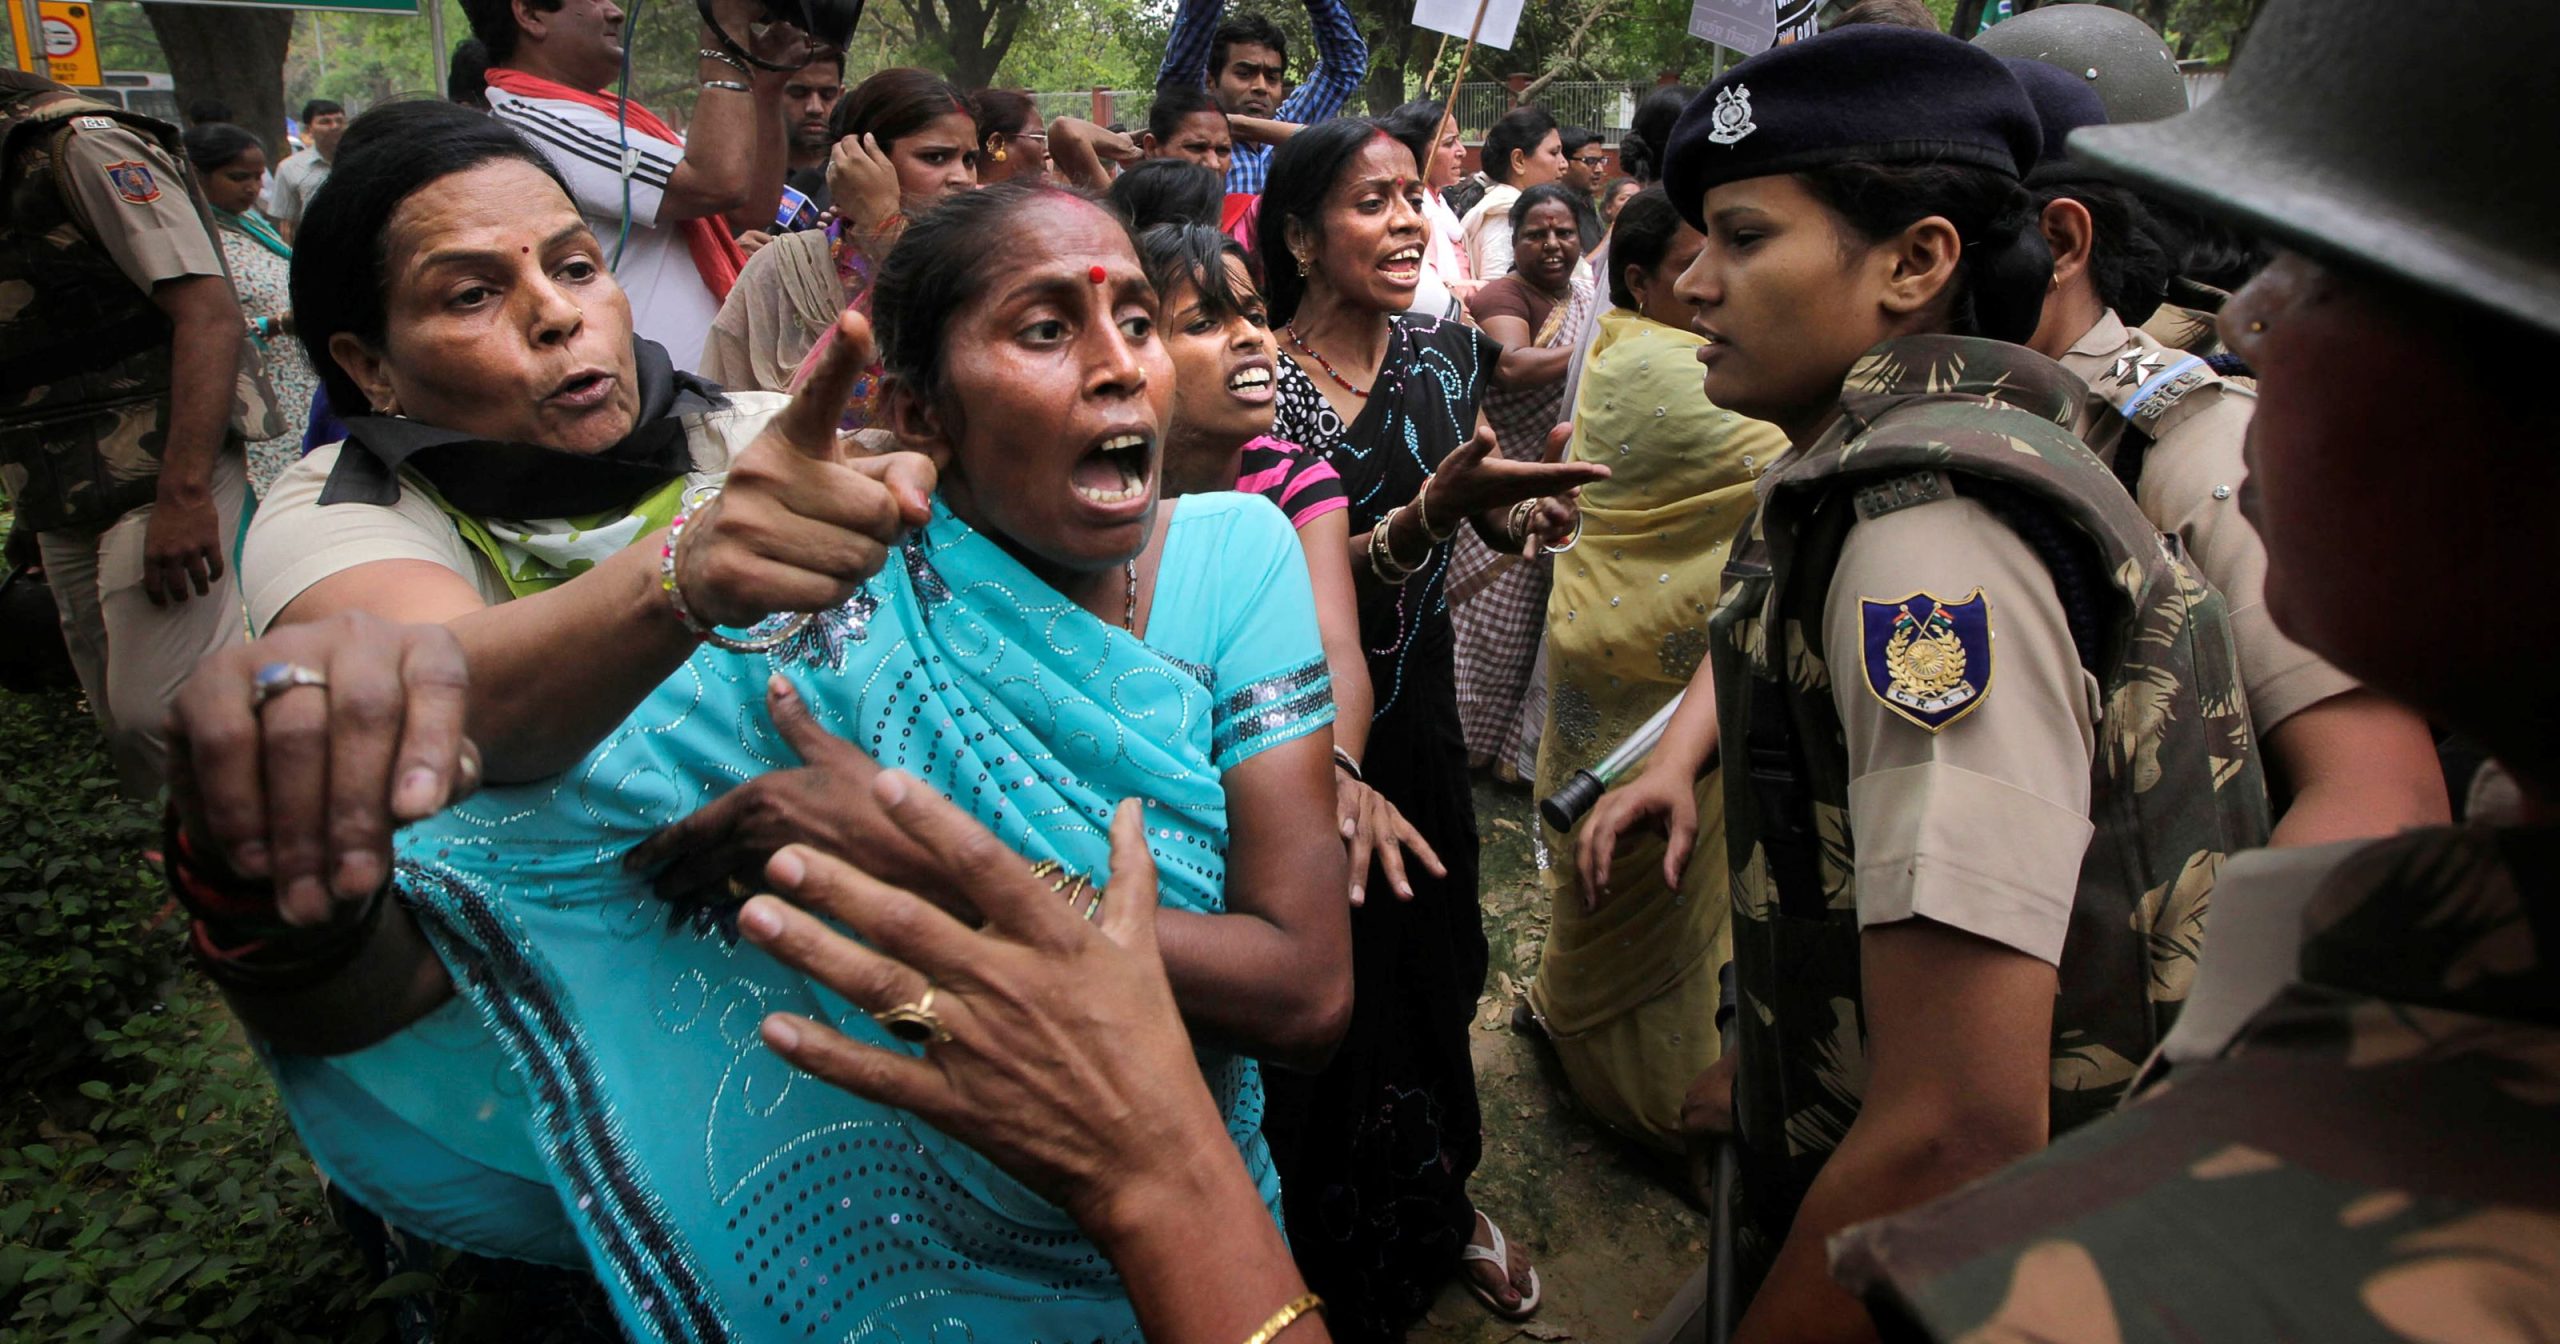 Φρίκη στην Ινδία: Πέντε γυναίκες κατά του τράφικινγκ βιάστηκαν ομαδικά υπό την απειλή όπλου!